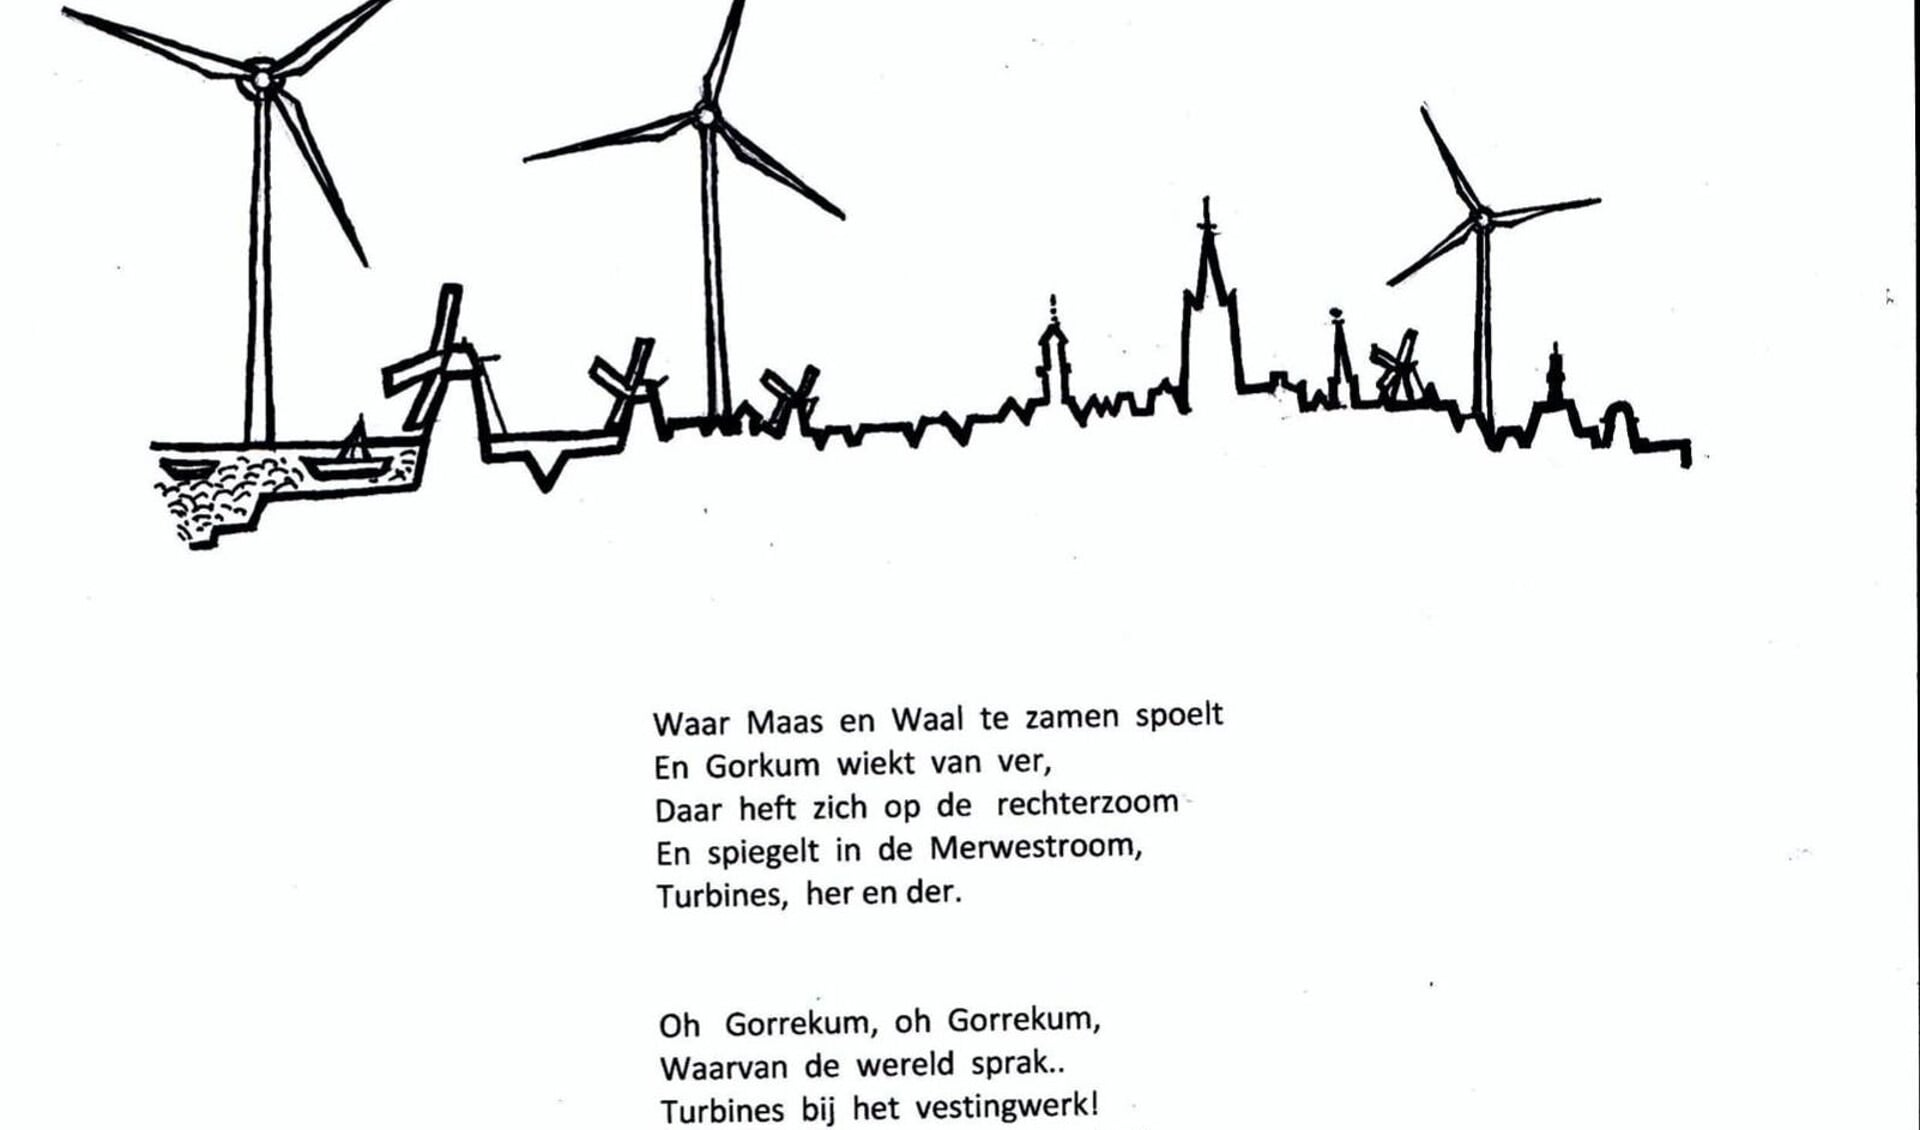 Bij het gedicht is een tekening van de skyline van Gorinchem gemaakt